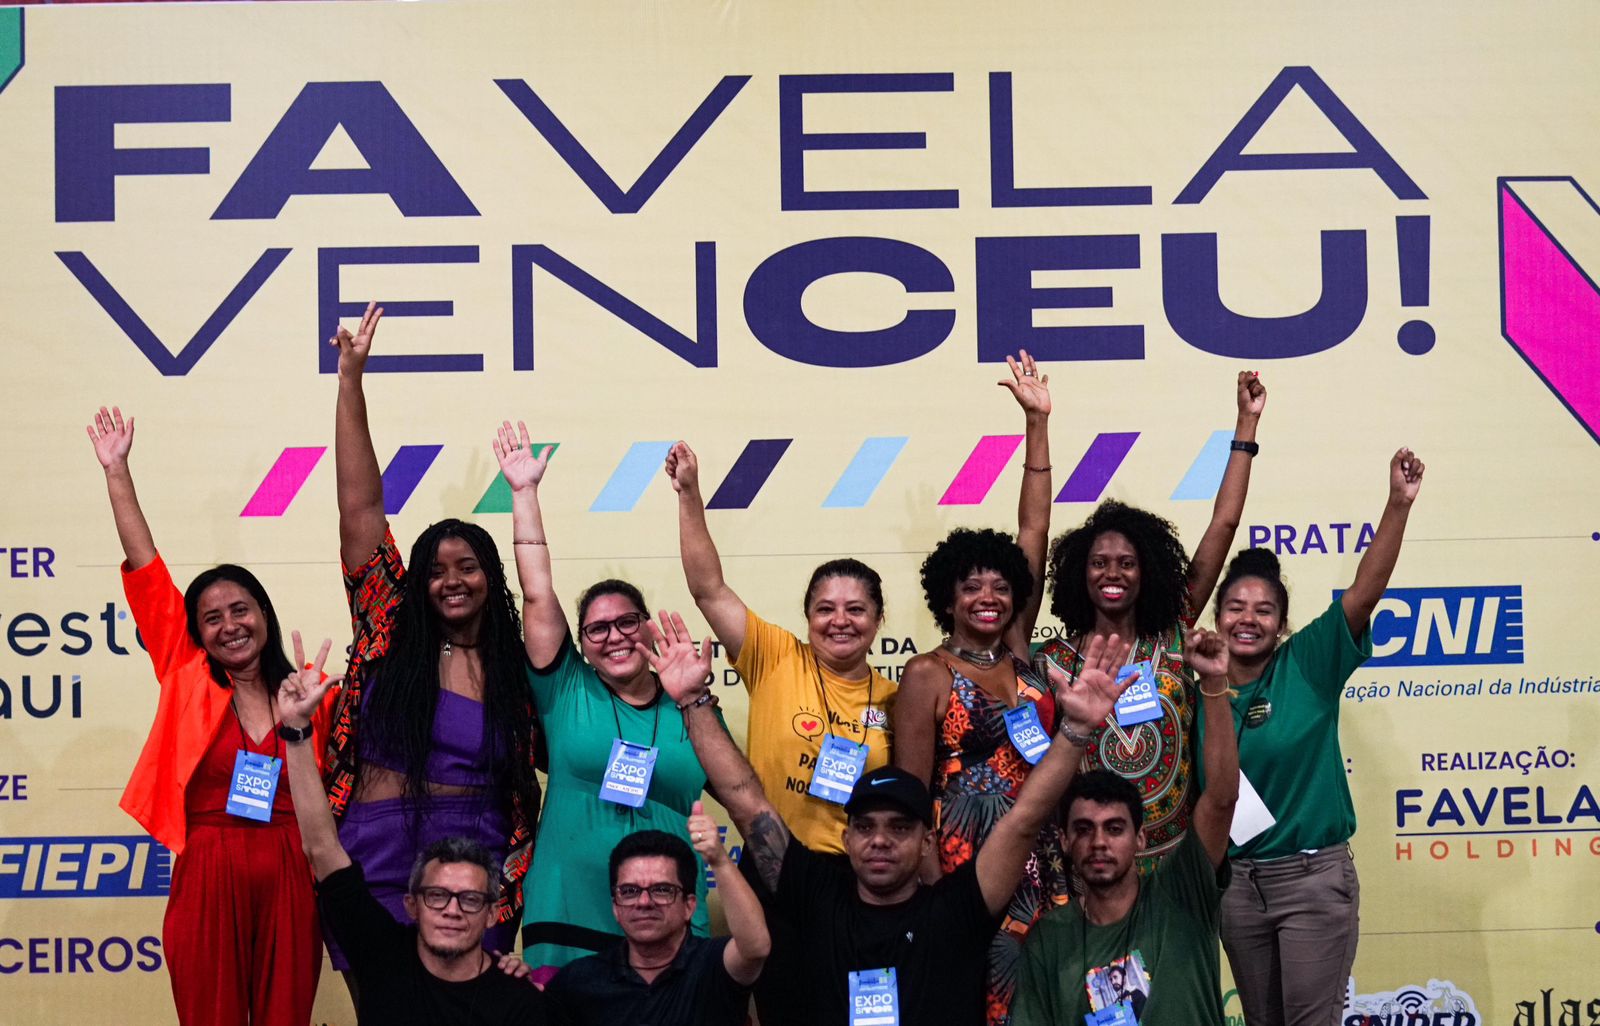 Expo Favela reúne pequenos empreendedores com grandes investidores